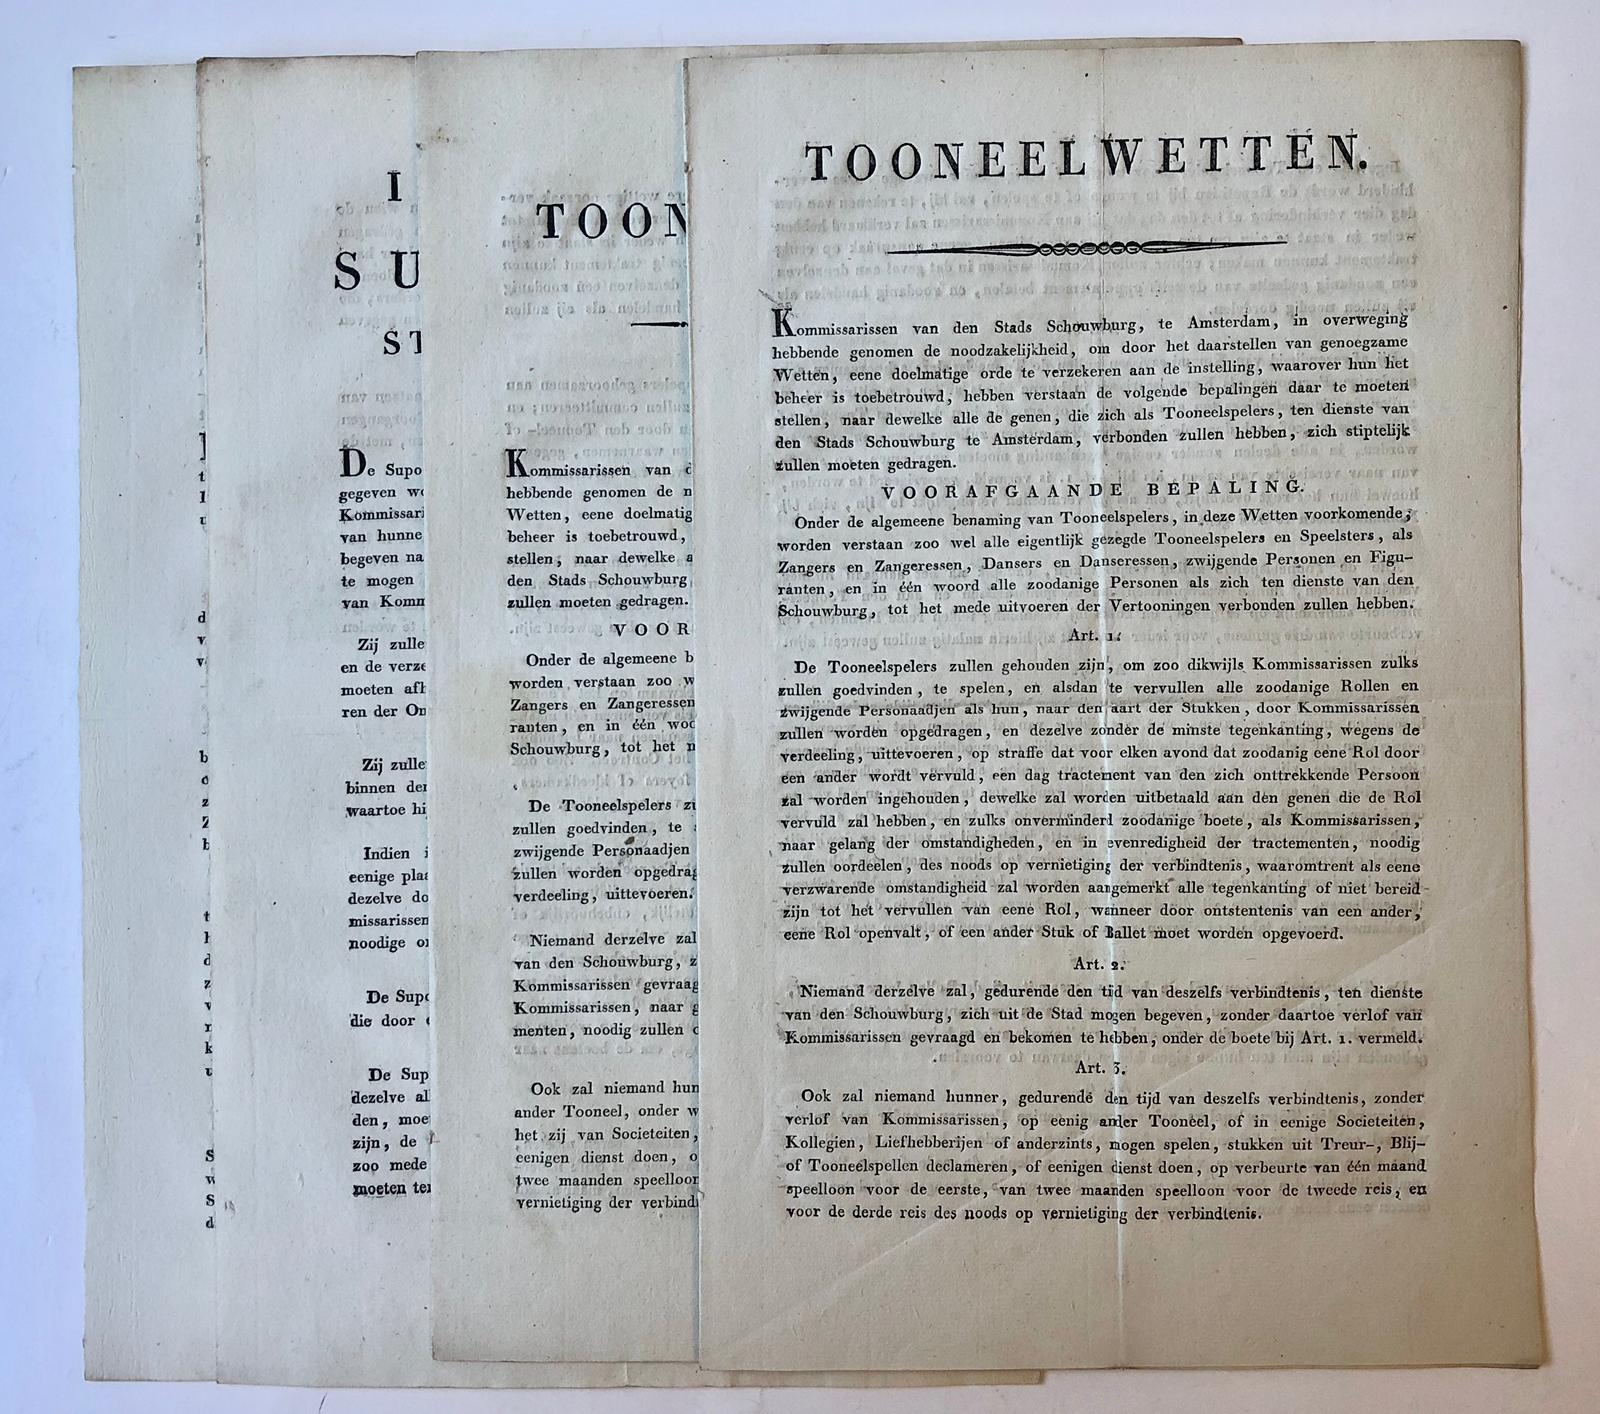 [Printed publication, Theater laws, legal, 1820] “Tooneelwetten” van de Amsterdamsche Schouwburg dd. 7-6-1820 en 8-5-1822, gedrukt, elk 4 p, folio.